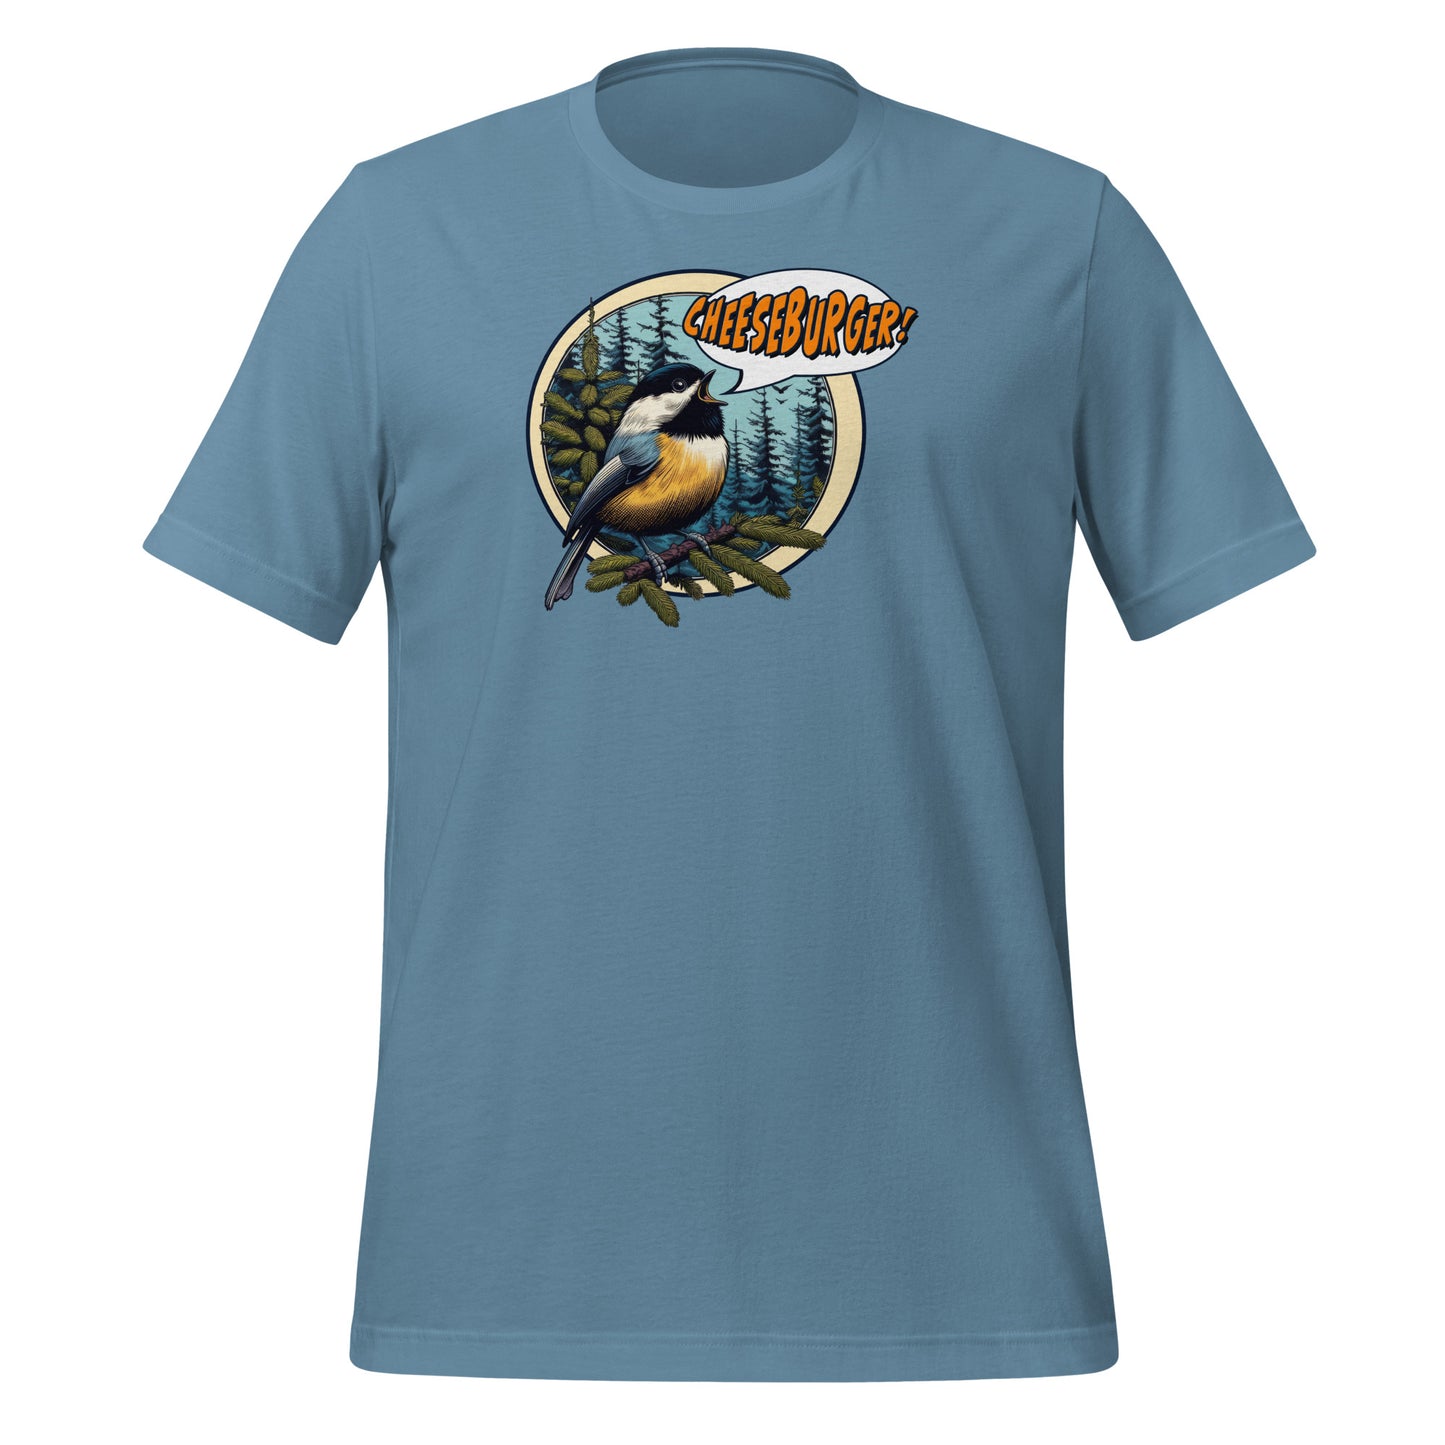 Chickadee Lightweight Cotton Unisex T-Shirt